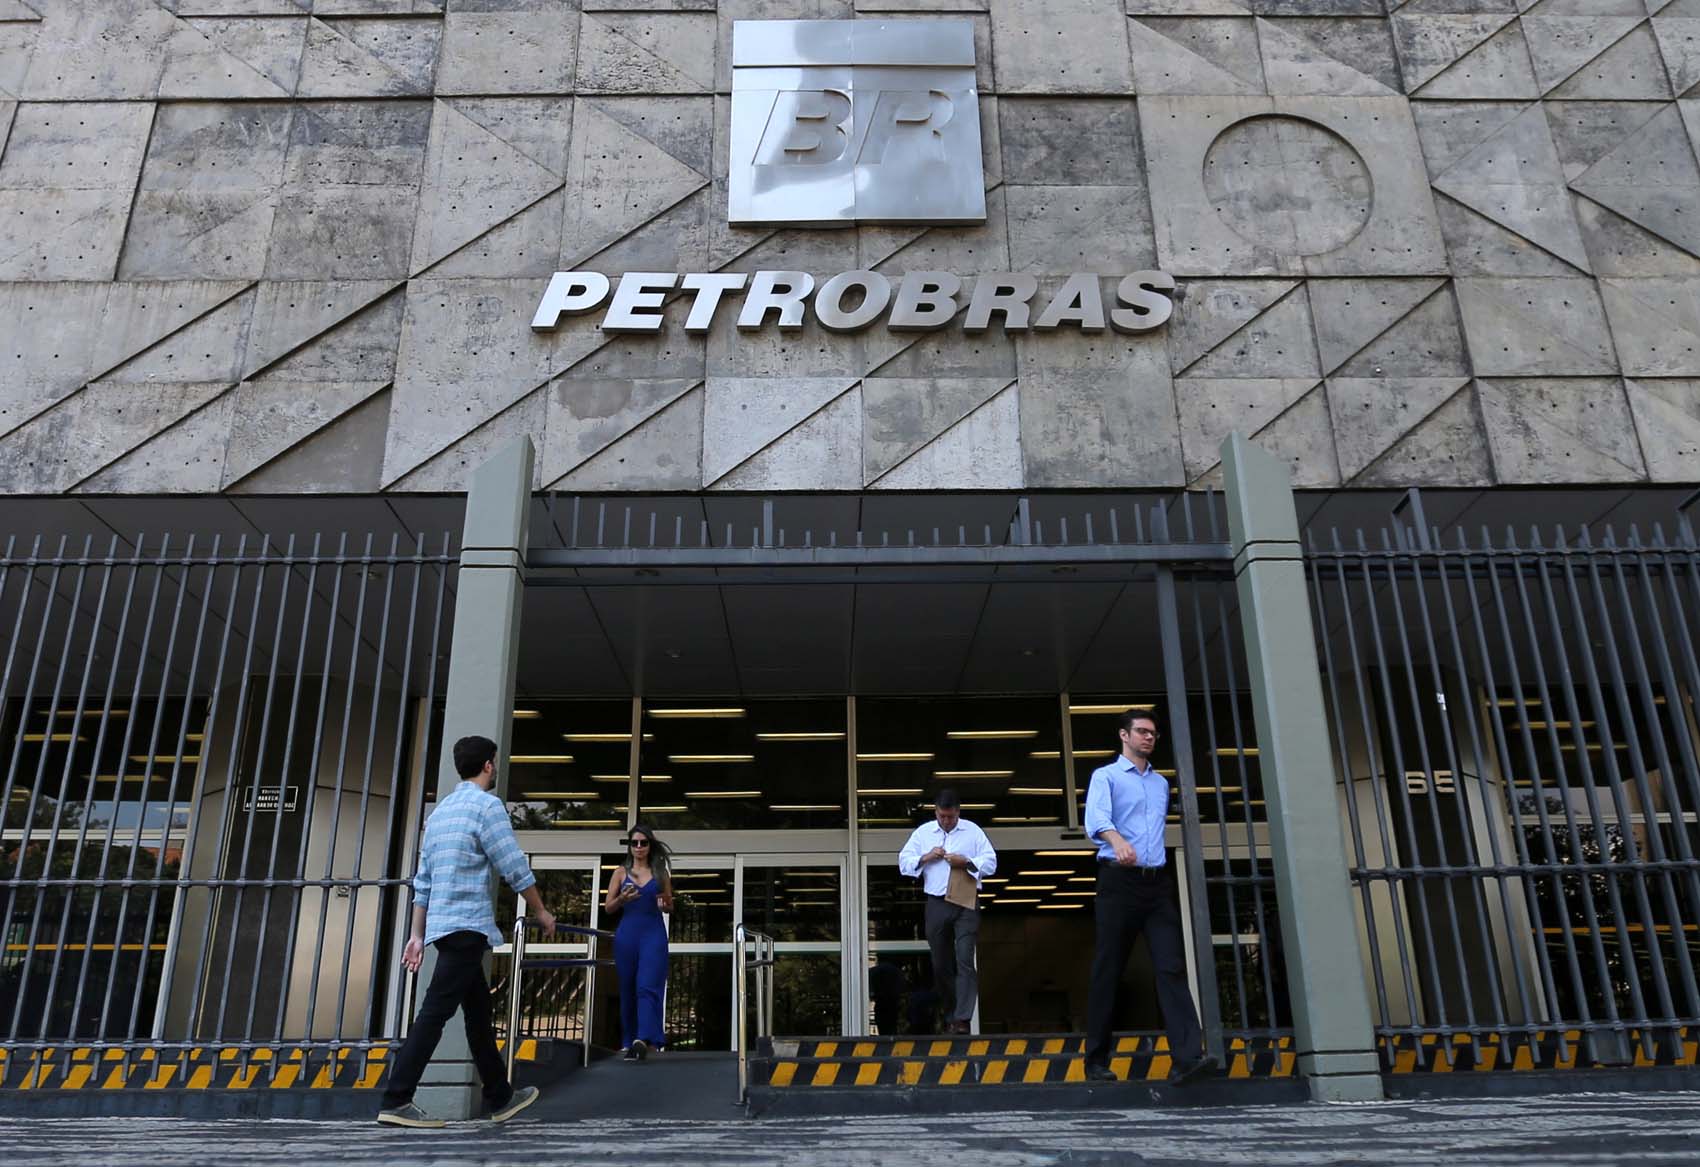 La brasileña Petrobras dice que la propuesta de Petro no tiene consenso ni en Colombia